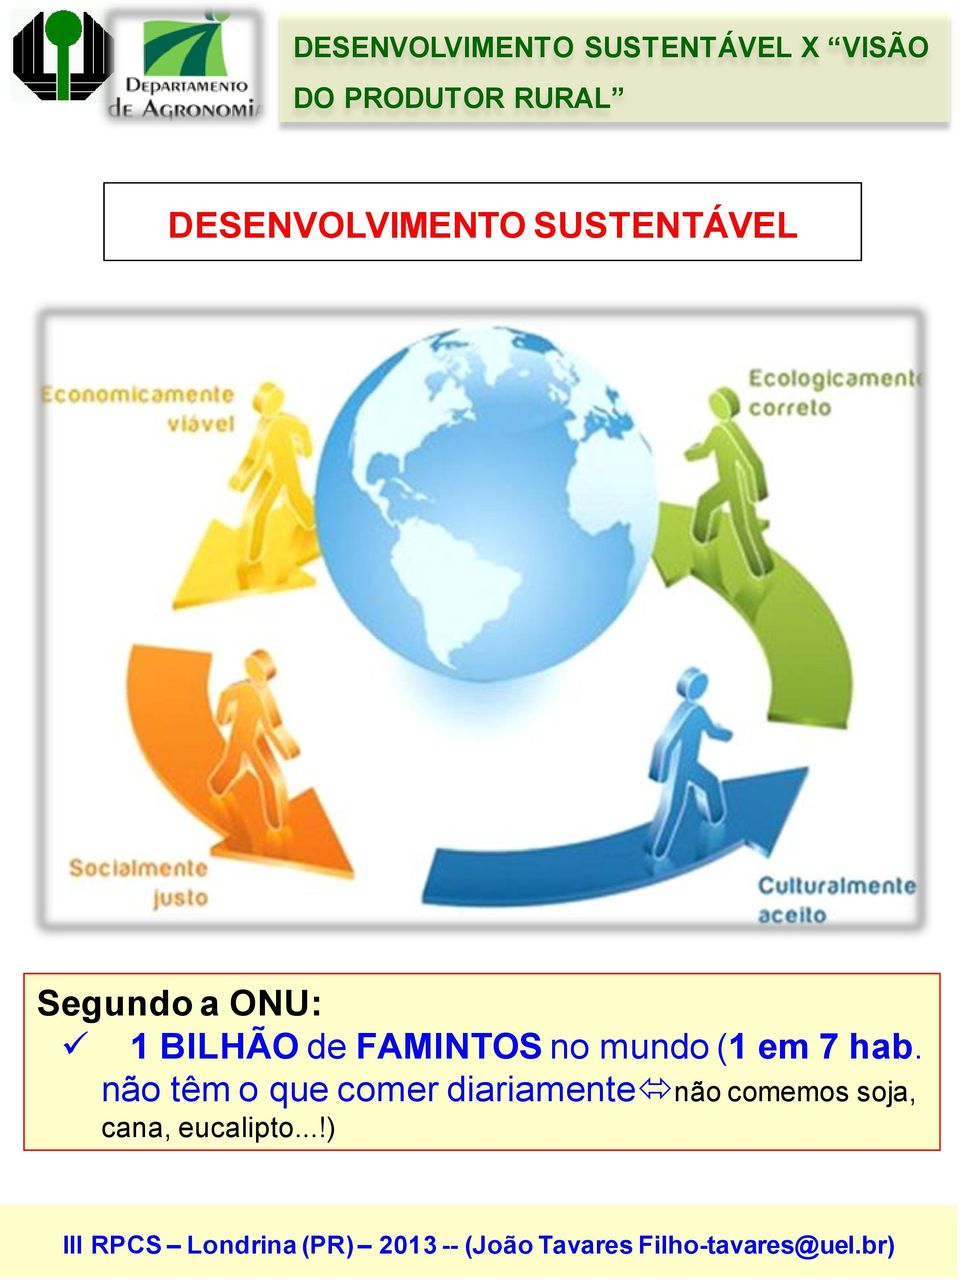 BILHÃO de FAMINTOS no mundo (1 em 7 hab.